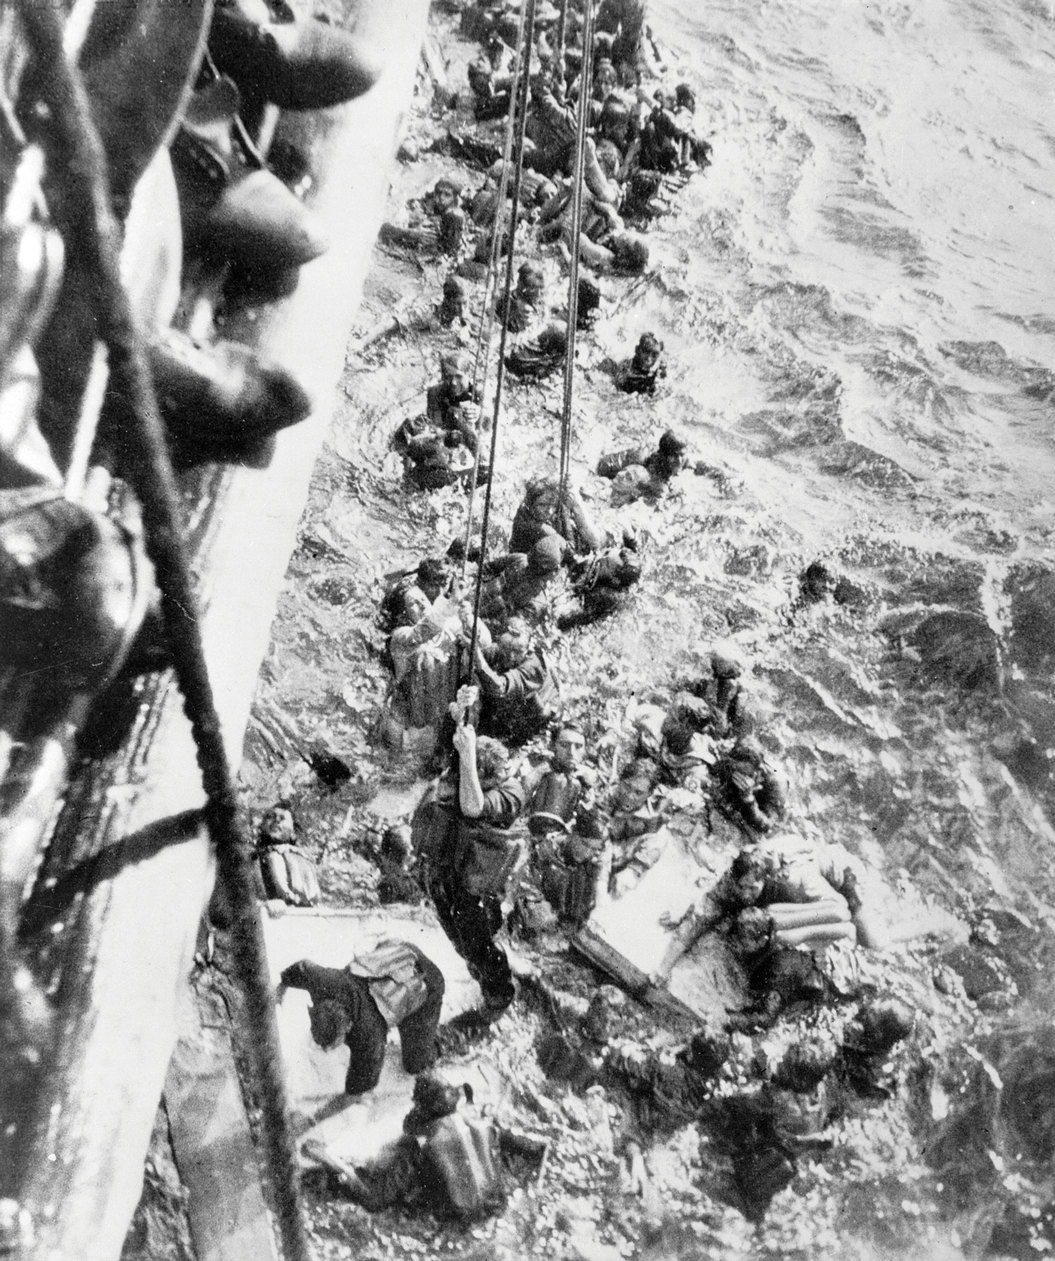 A Bismarck túlélőinek egy csoportja a Dorsetshire mellett. Percekkel később félbeszakították a mentést, így többségük már nem jutott fel a hajóra.